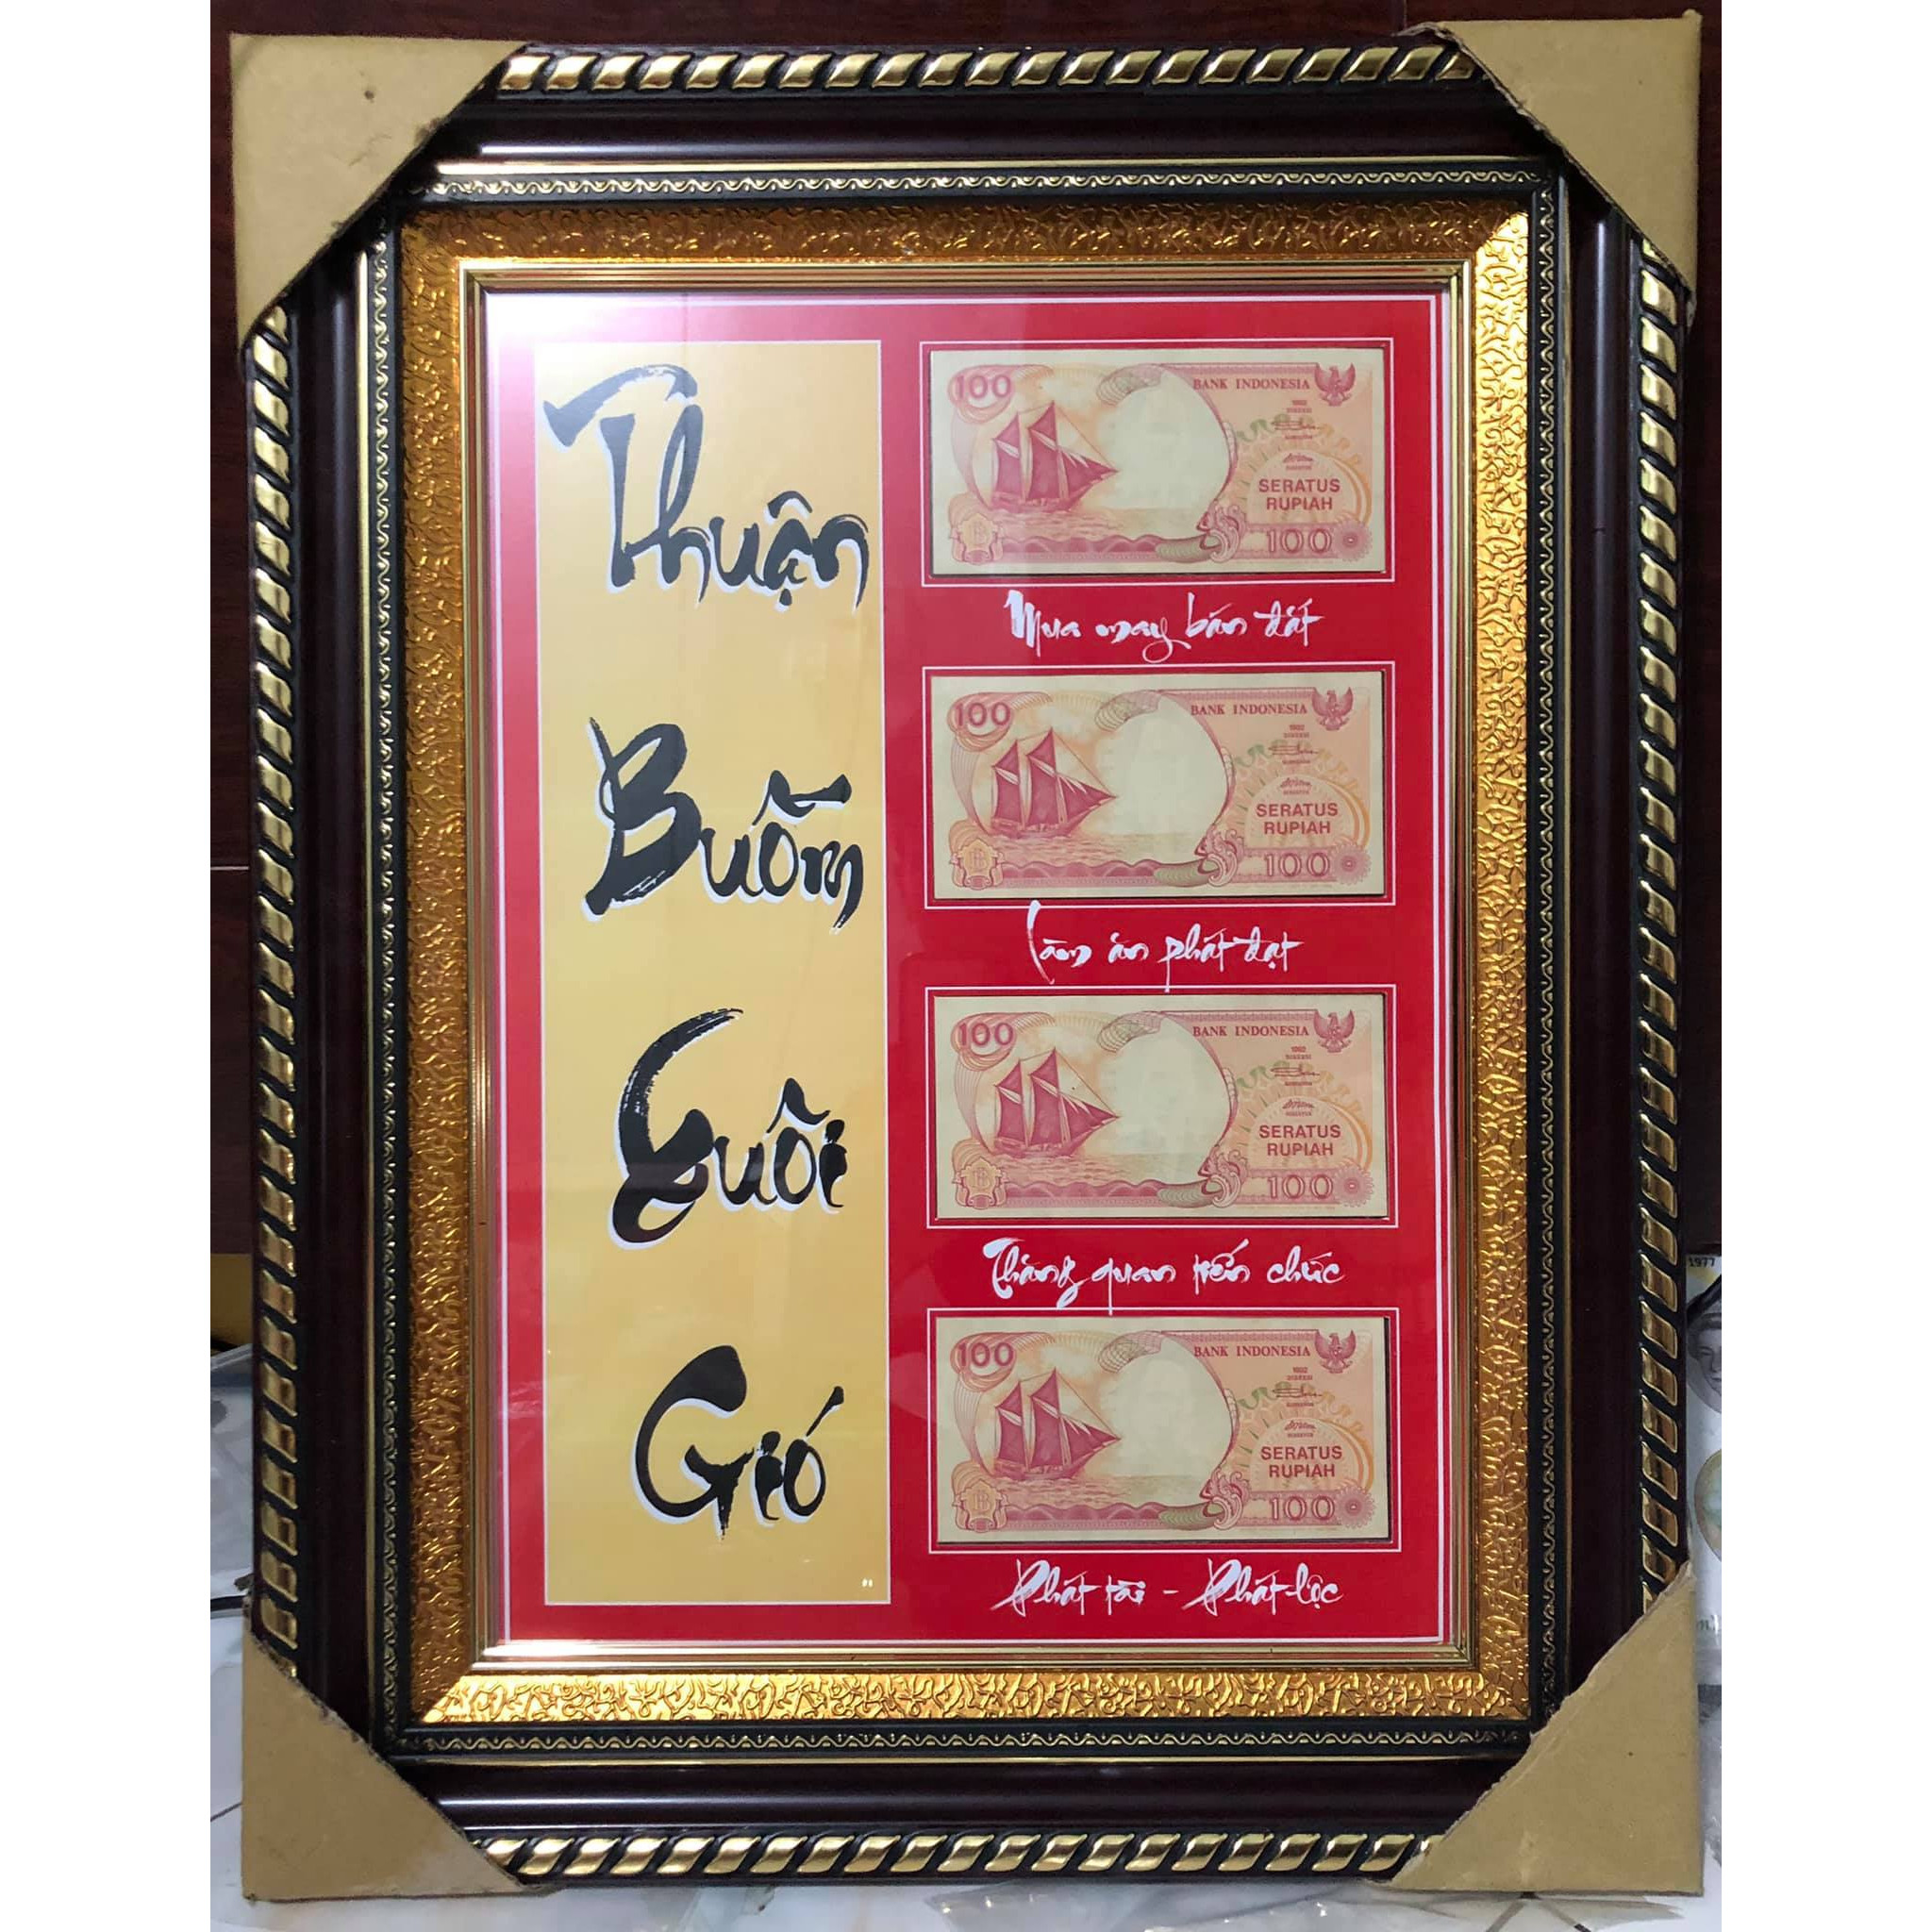 Tranh thư pháp Thuận Buồm Xuôi Gió nền đỏ vàng ghép tờ tiền 100 rupiah của Indonesia, đẹp và độc đáo